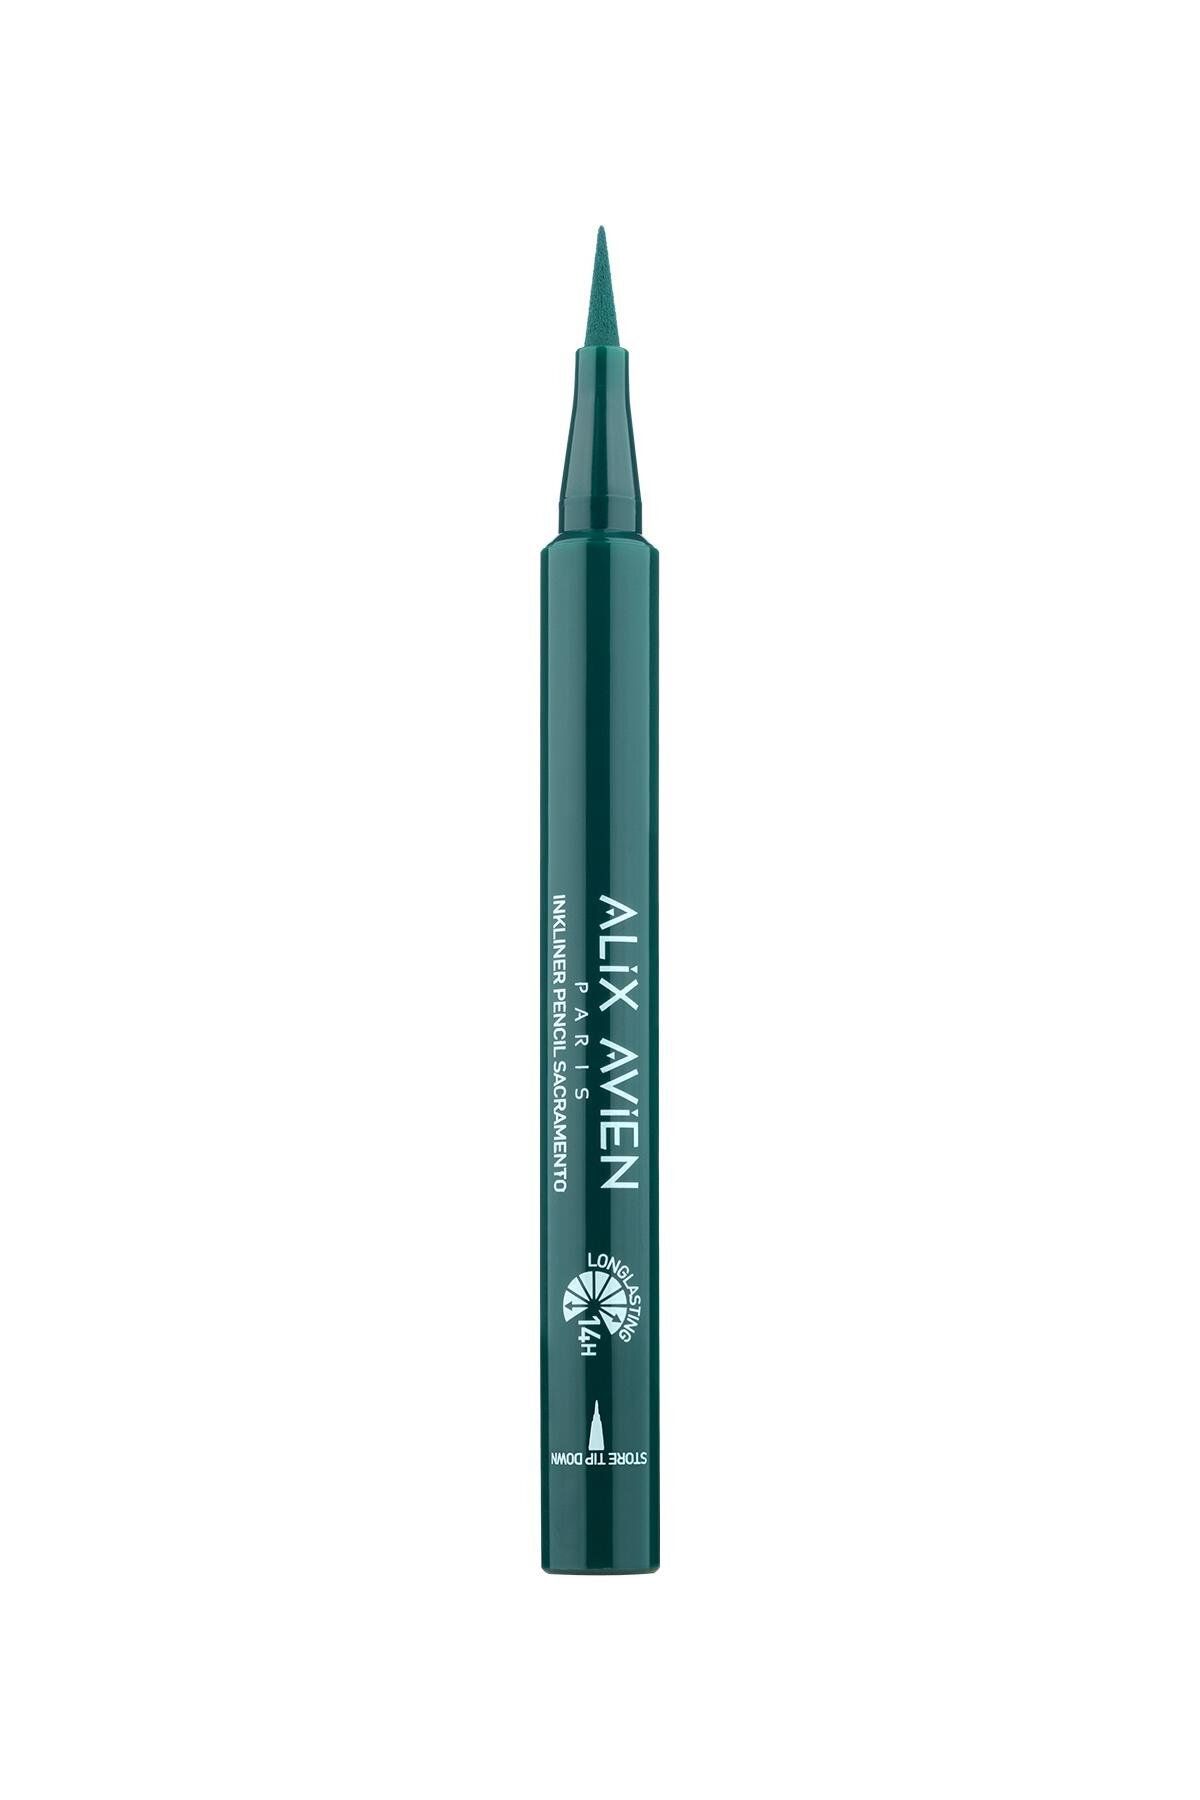 Alix Avien Inkliner Pencil Sacramento - Eyeliner Ekstra Sacramento Yeşili - Yoğun Renk 14 Saat Kalıcı Etki